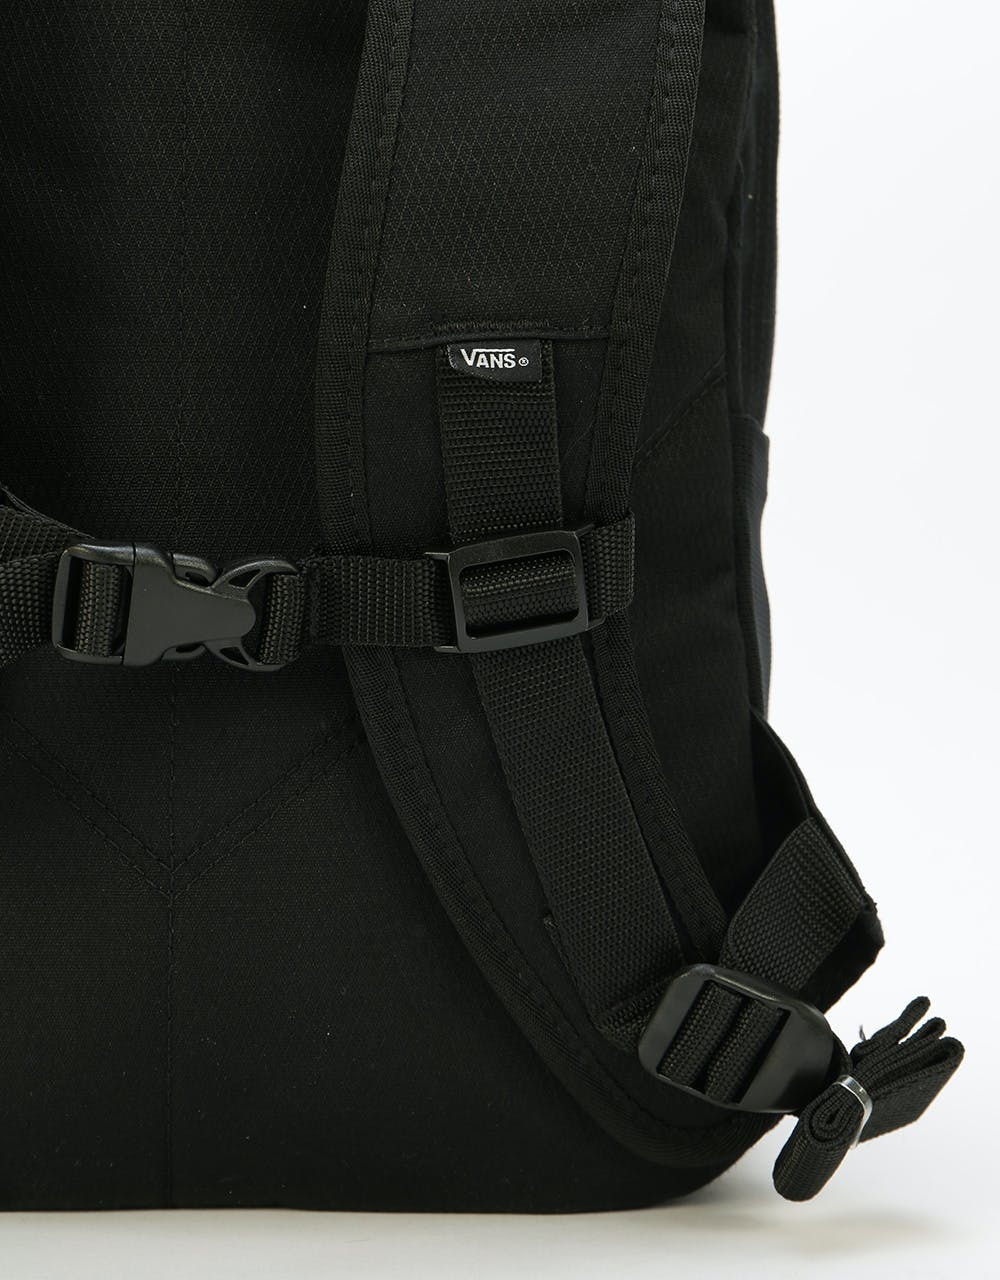 Vans Snag Plus Backpack - Heliotrope/Black